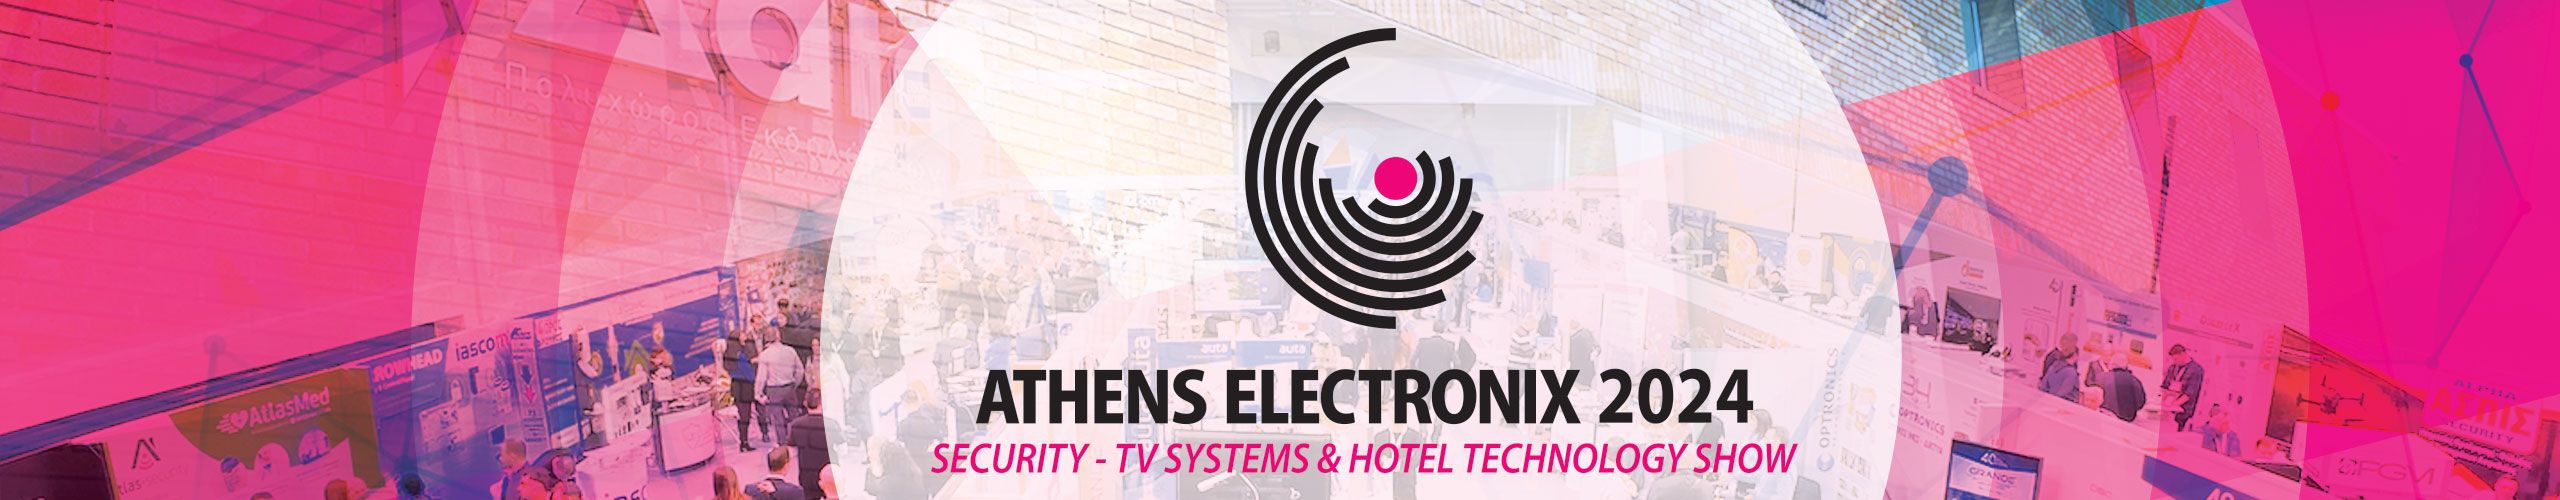 Μεγάλη επιτυχία για την Athens Electronix 2024! 